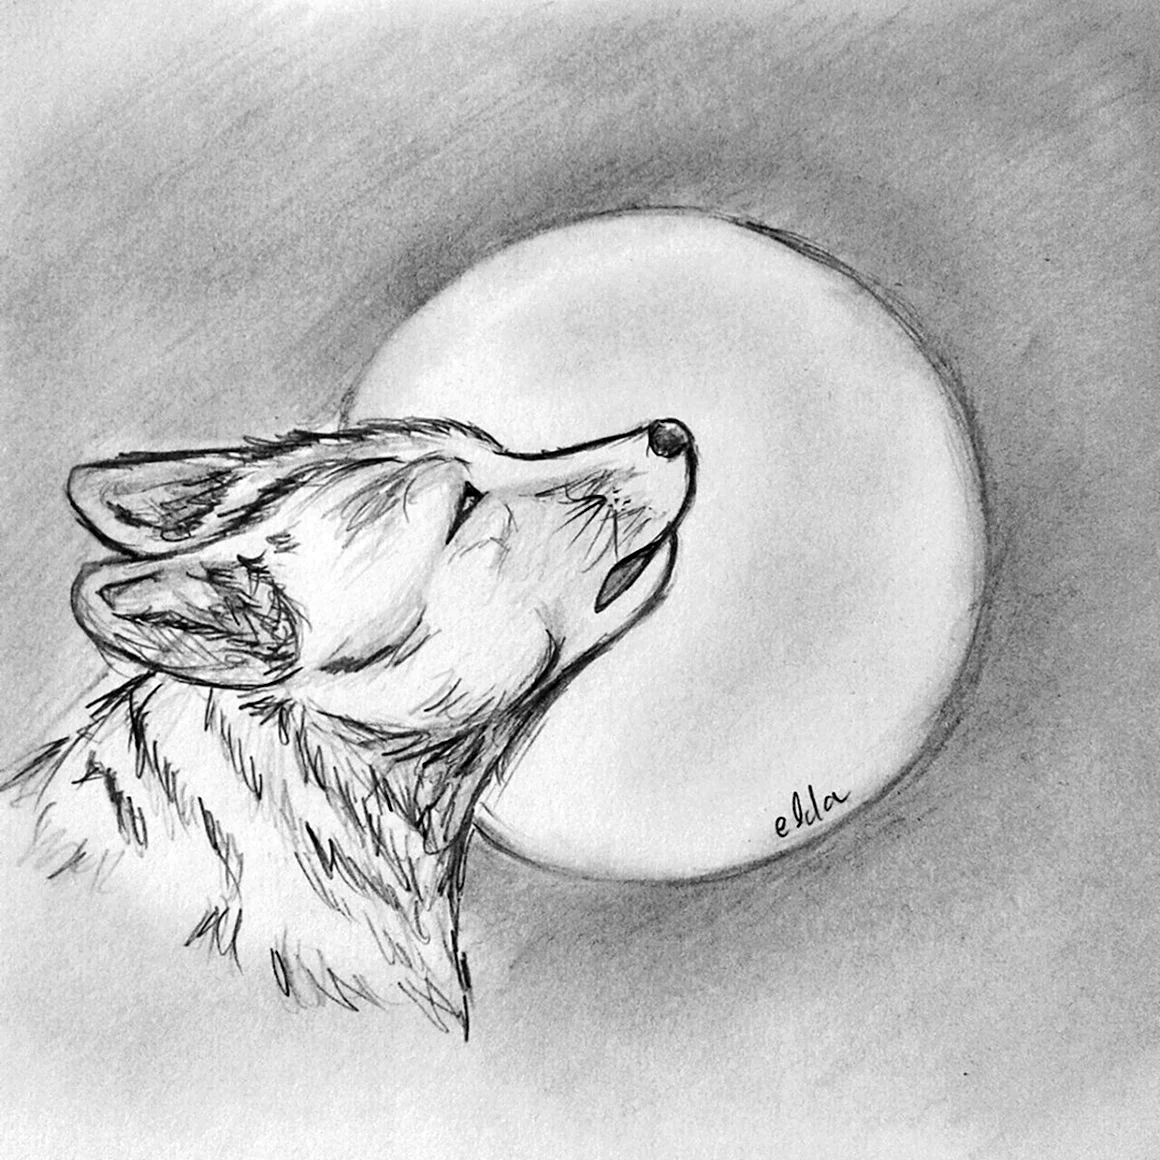 Волк воет на луну рисунок карандашом